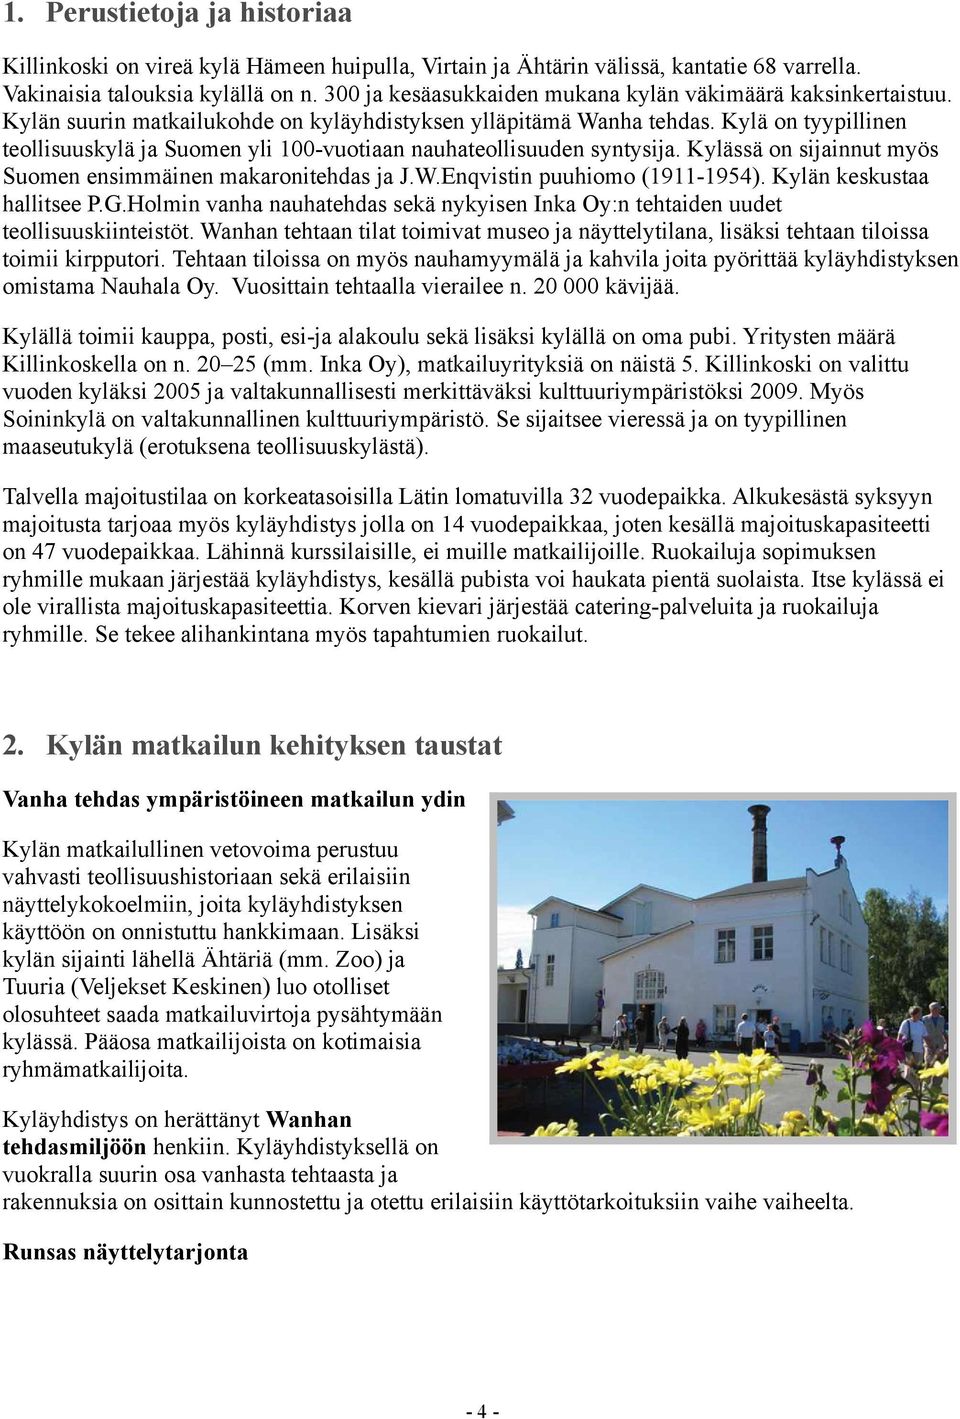 Kylä on tyypillinen teollisuuskylä ja Suomen yli 100-vuotiaan nauhateollisuuden syntysija. Kylässä on sijainnut myös Suomen ensimmäinen makaronitehdas ja J.W.Enqvistin puuhiomo (1911-1954).